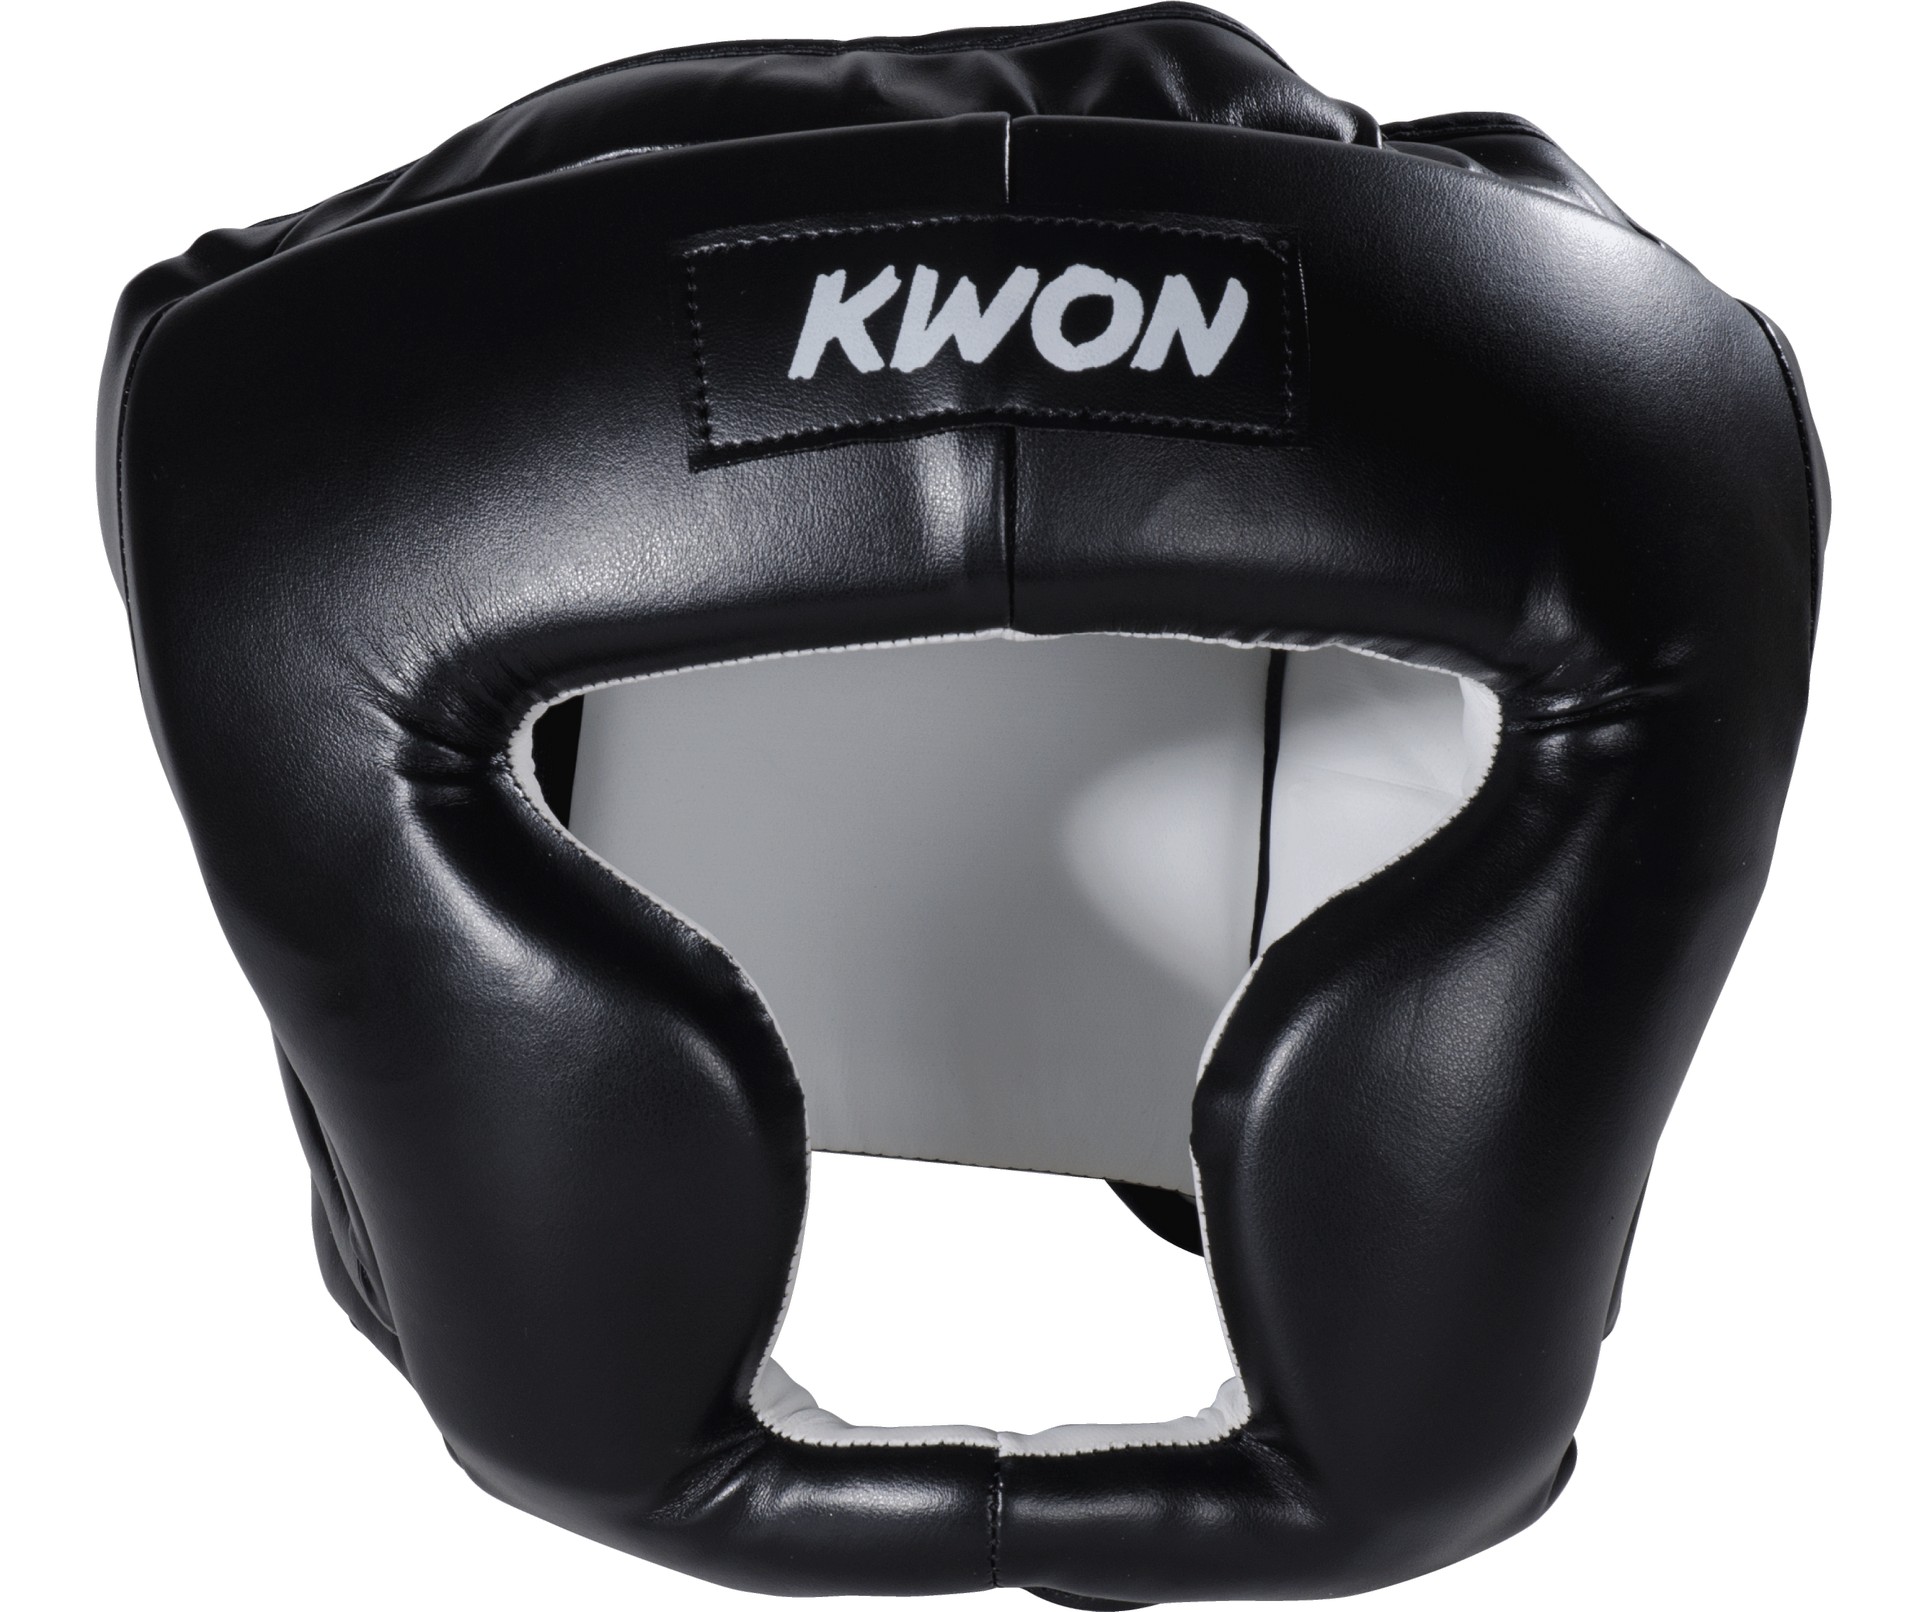 Kwon Kick Thai Kopfschutz-AFS_000163_B6